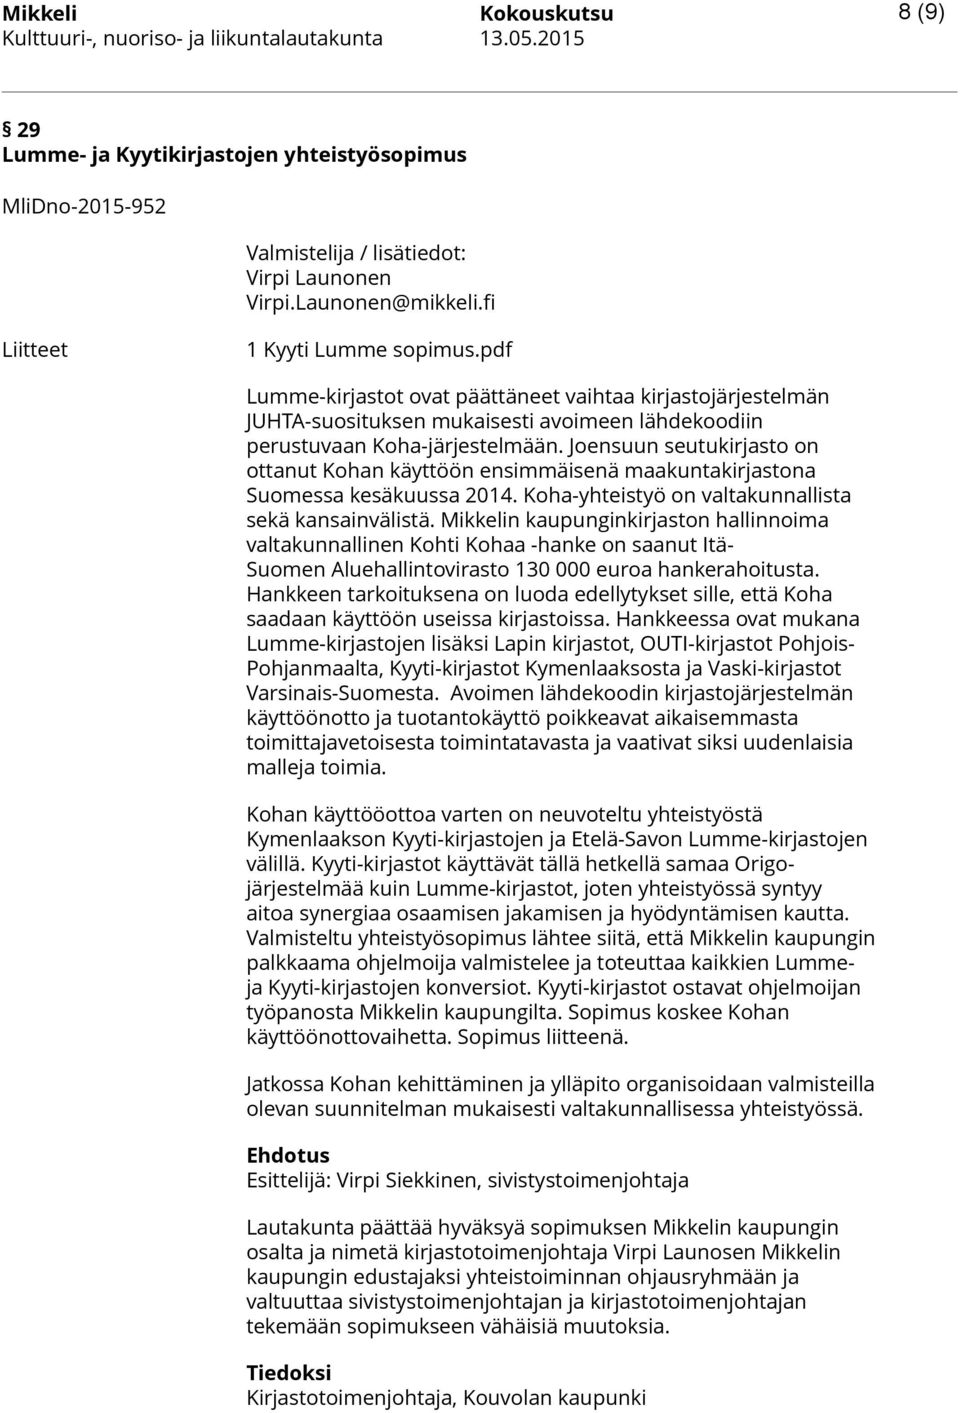 Joensuun seutukirjasto on ottanut Kohan käyttöön ensimmäisenä maakuntakirjastona Suomessa kesäkuussa 2014. Koha-yhteistyö on valtakunnallista sekä kansainvälistä.